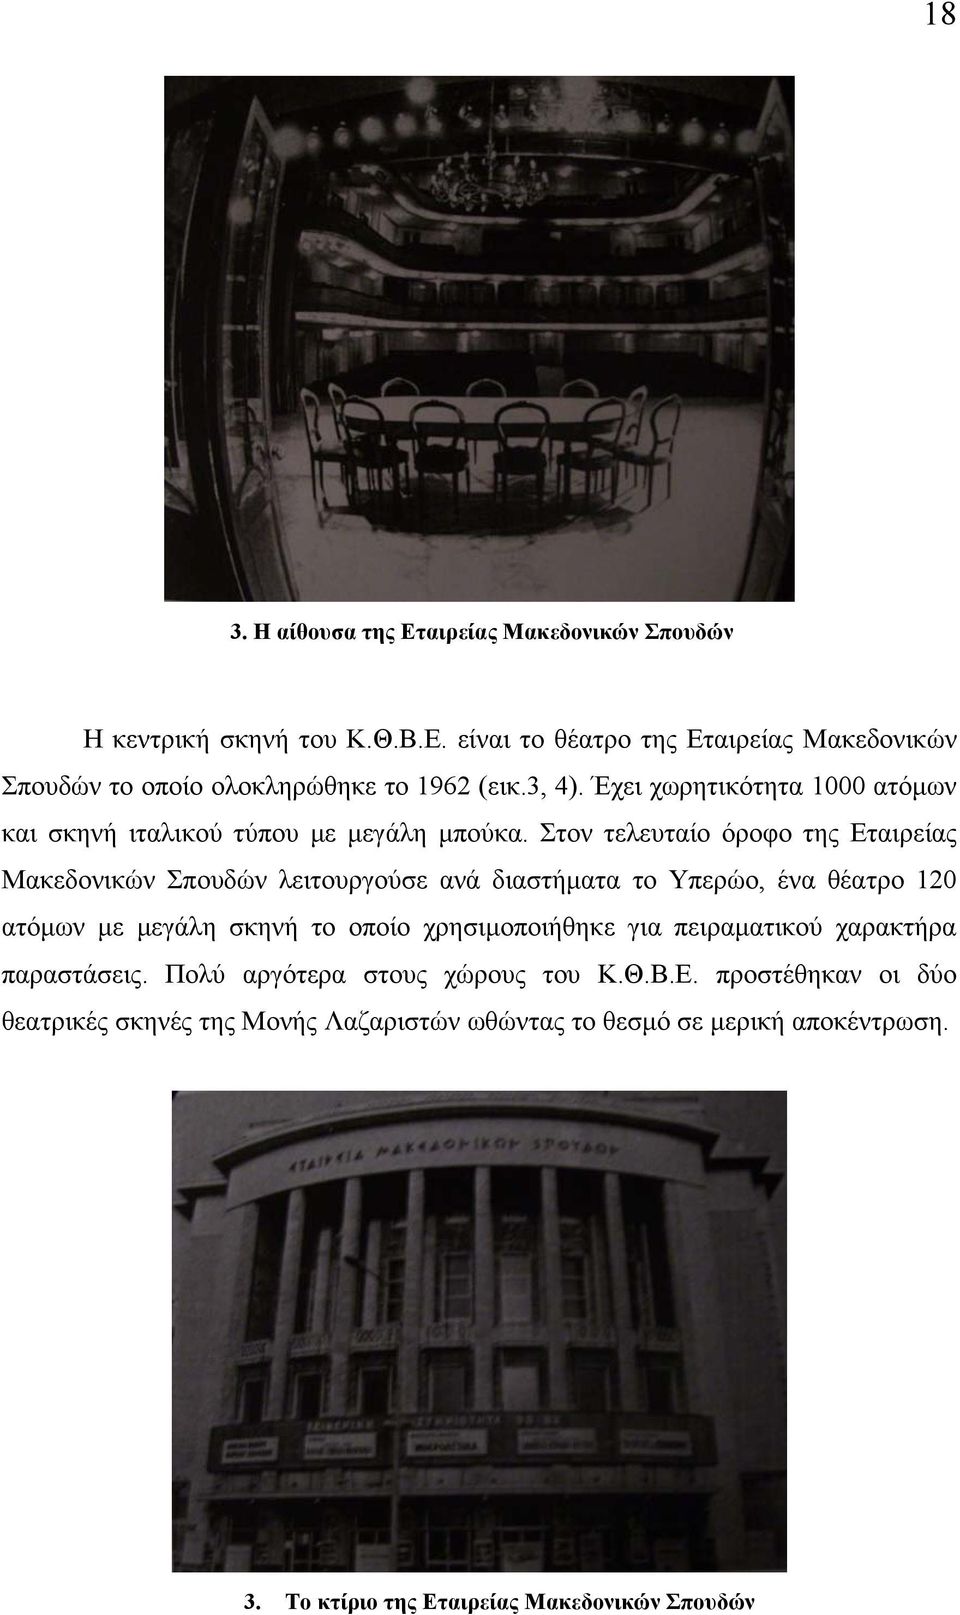 Στον τελευταίο όροφο της Εταιρείας Μακεδονικών Σπουδών λειτουργούσε ανά διαστήματα το Υπερώο, ένα θέατρο 120 ατόμων με μεγάλη σκηνή το οποίο χρησιμοποιήθηκε